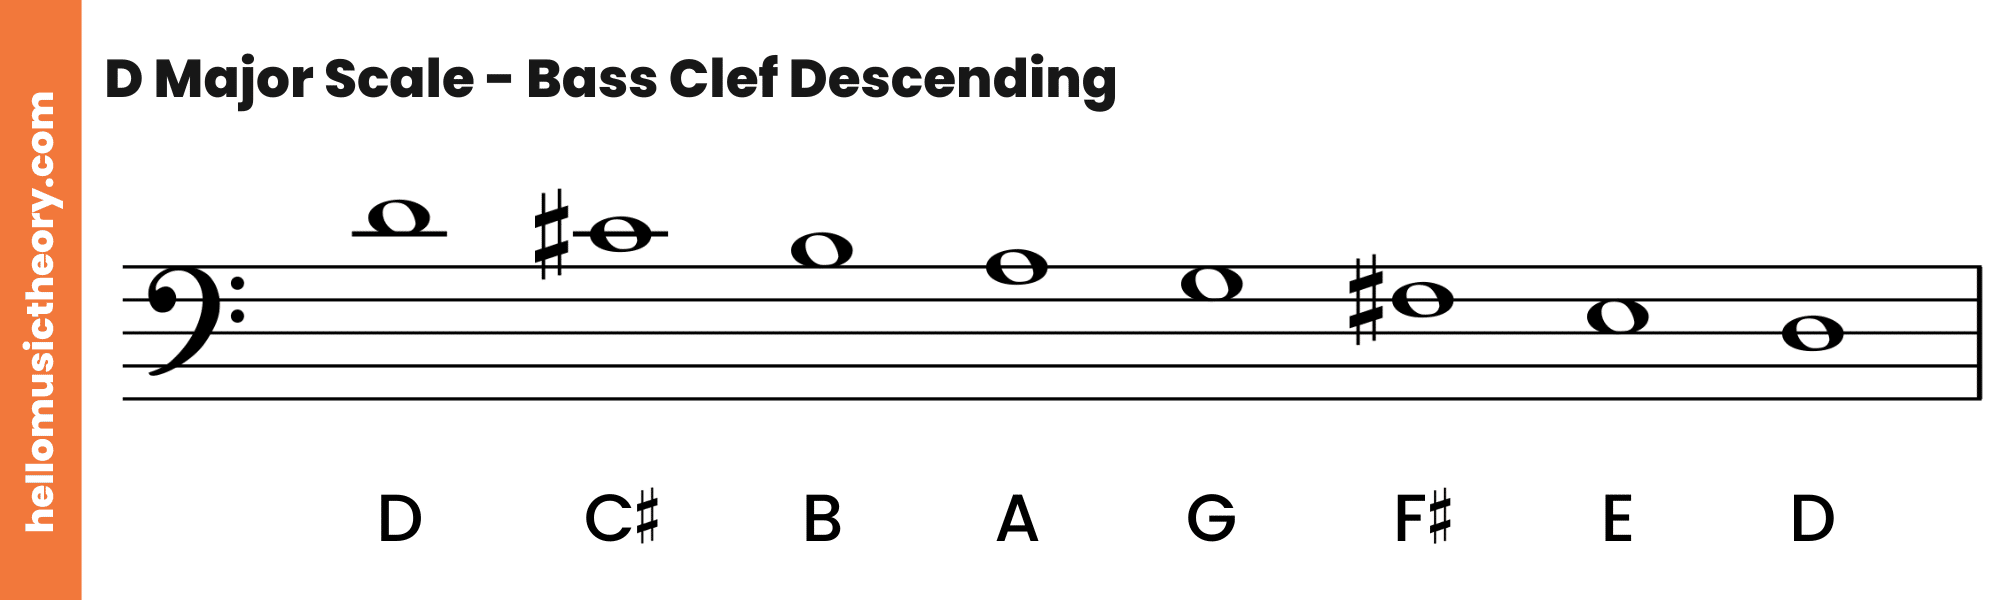 D Major Scale Bass Clef Descending